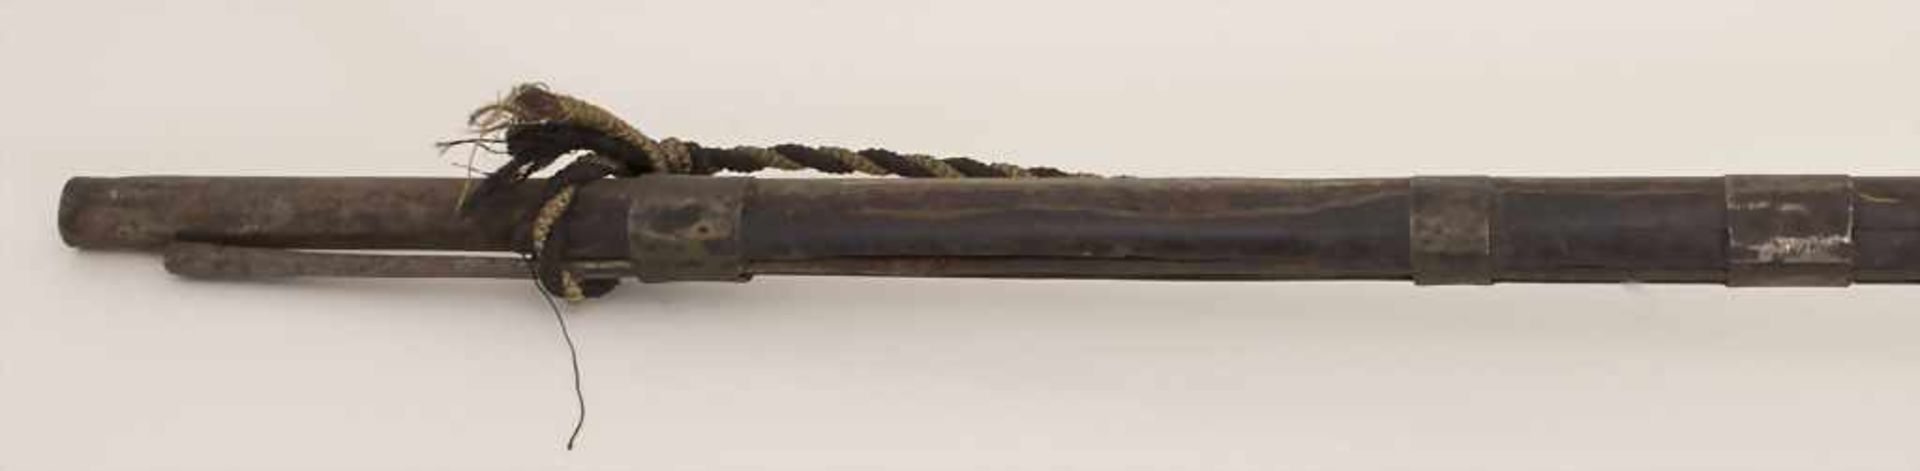 Steinschlossgewehr / A flintflock musket, Nordafrika, 19. Jh.Material: Hartholz, Eisen, - Image 4 of 7